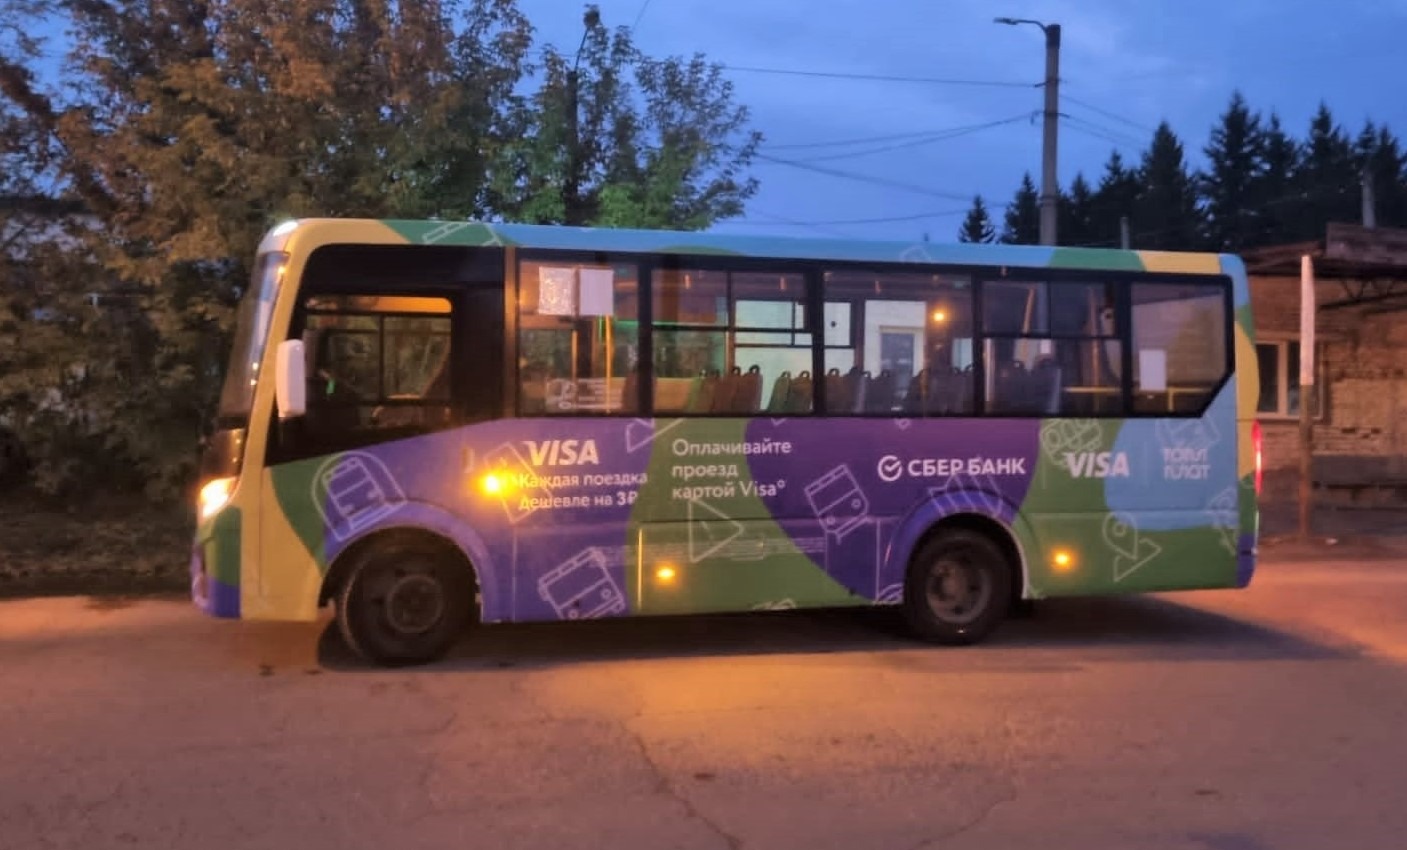 Поездки в автобусах Томска станут дешевле: Сбербанк и Visa запустили акцию